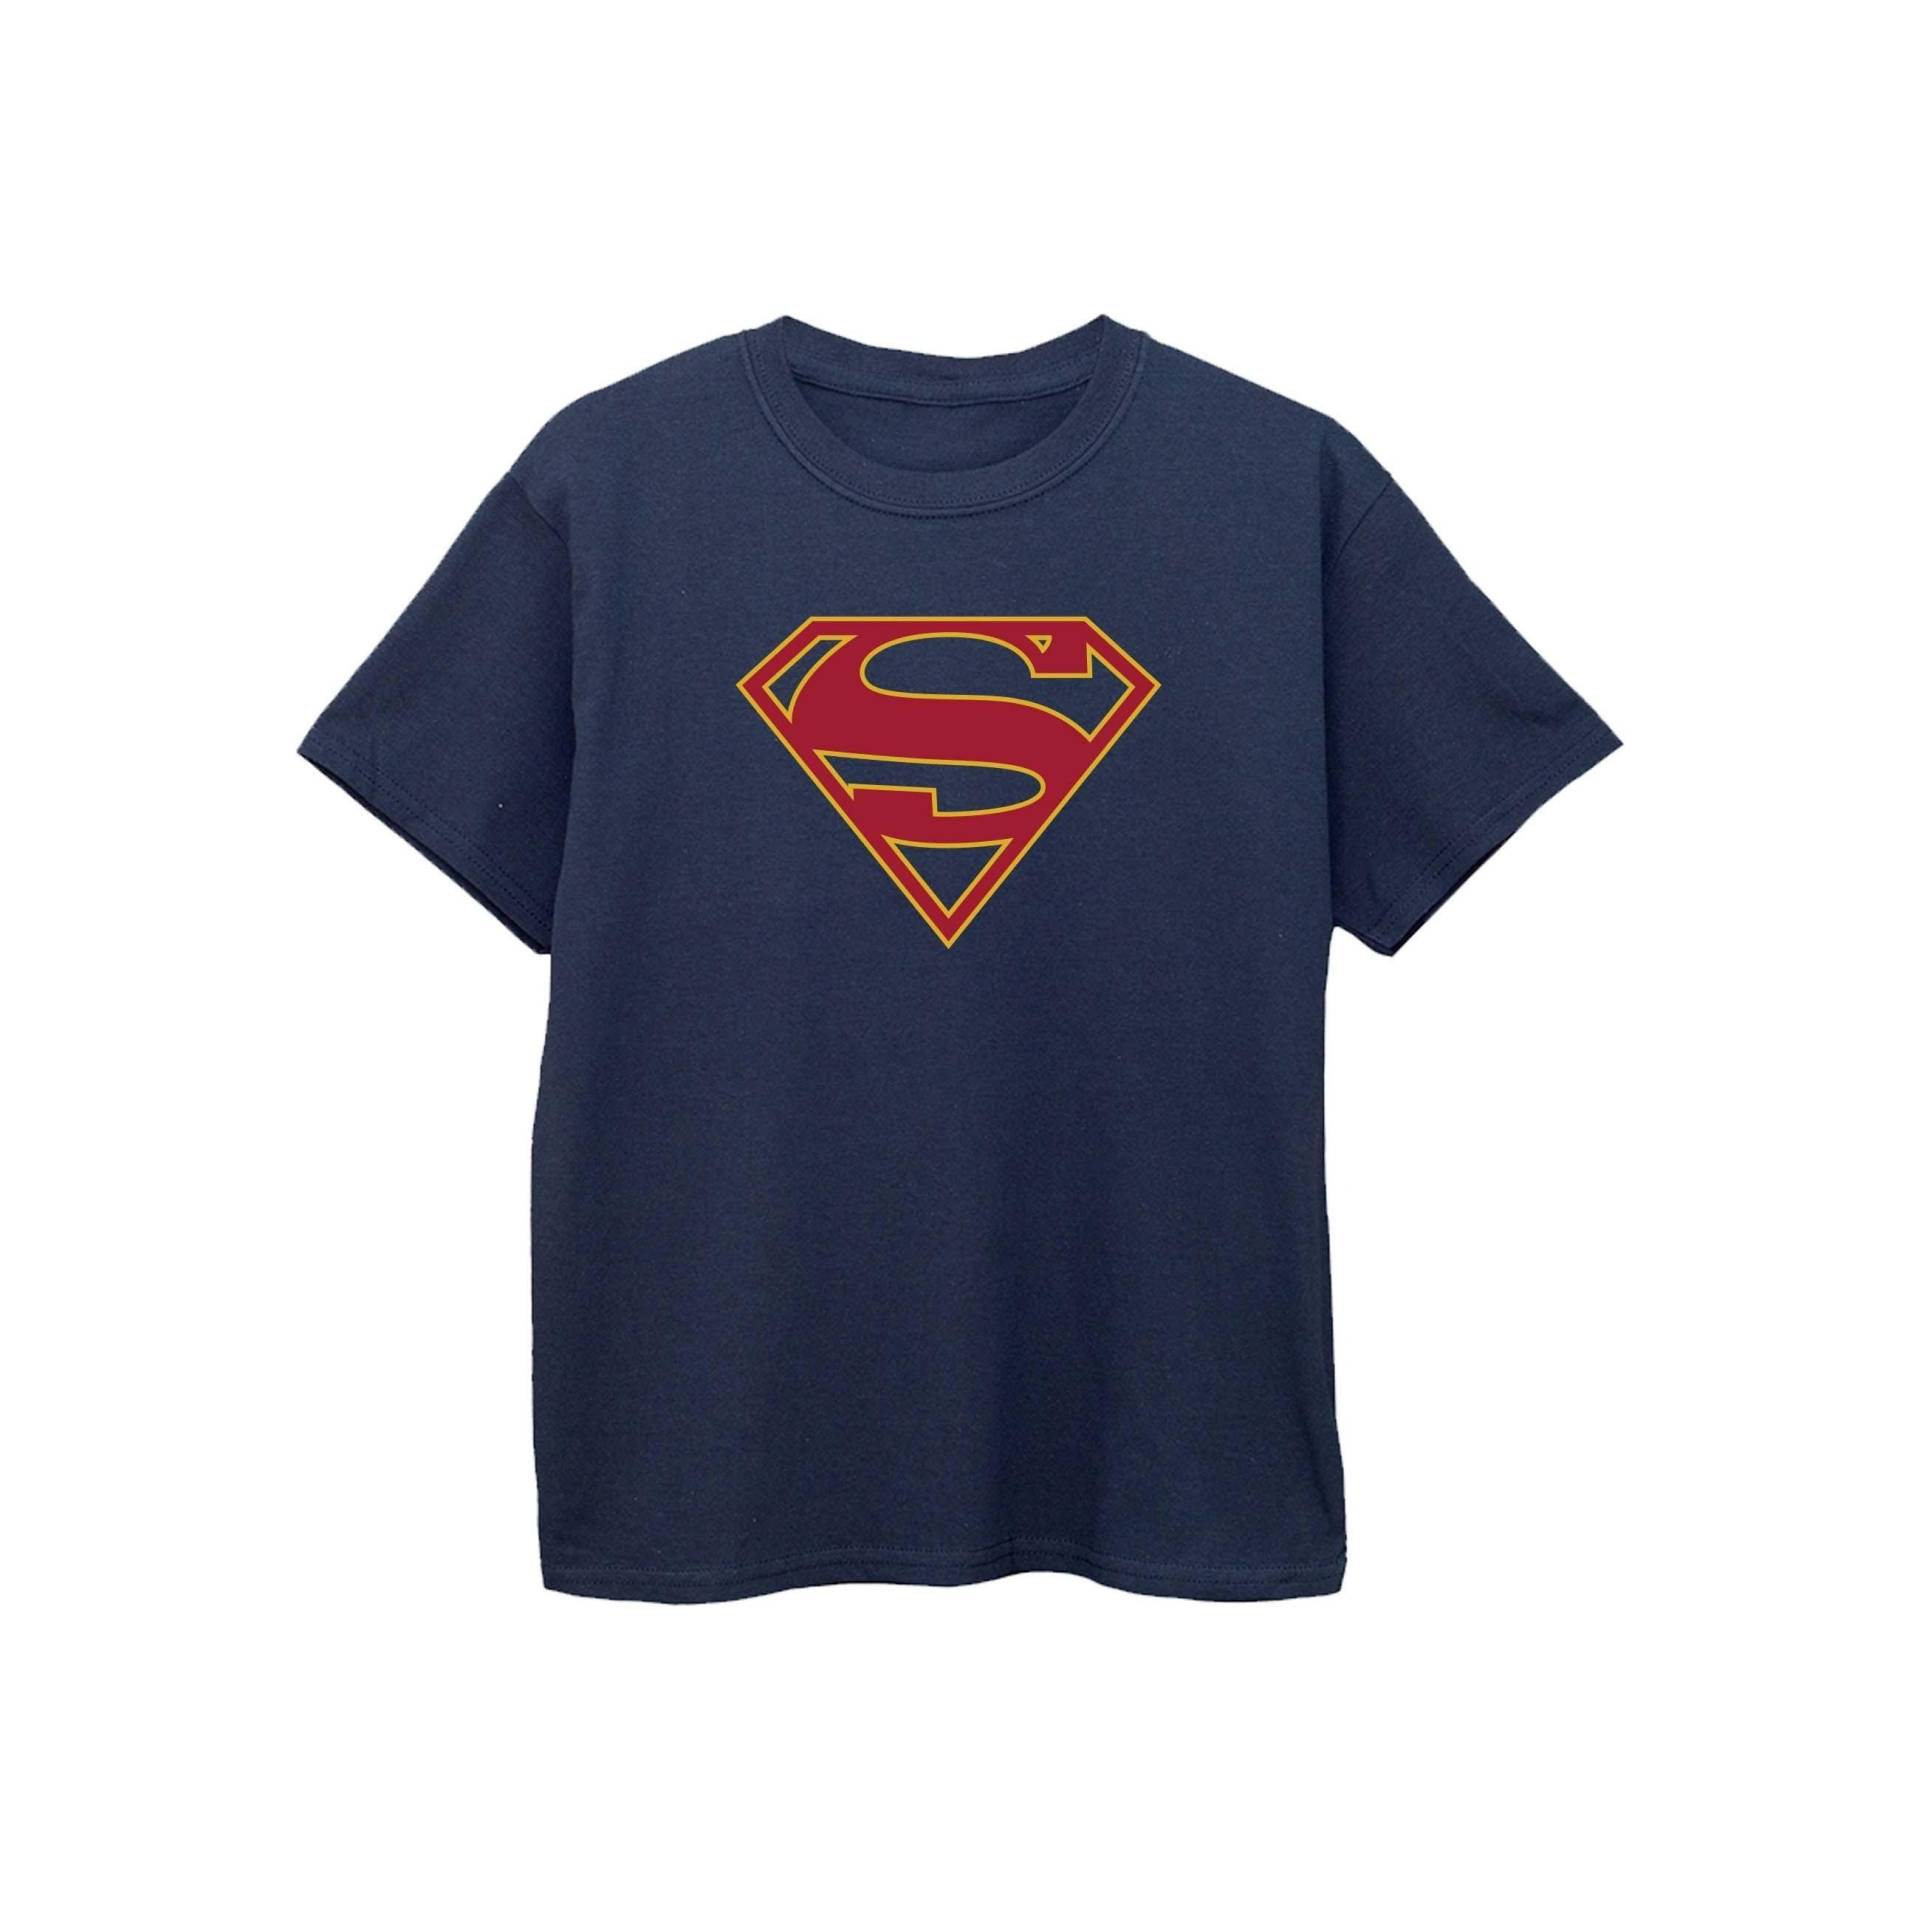 Tshirt Mädchen Marine 116 von Supergirl